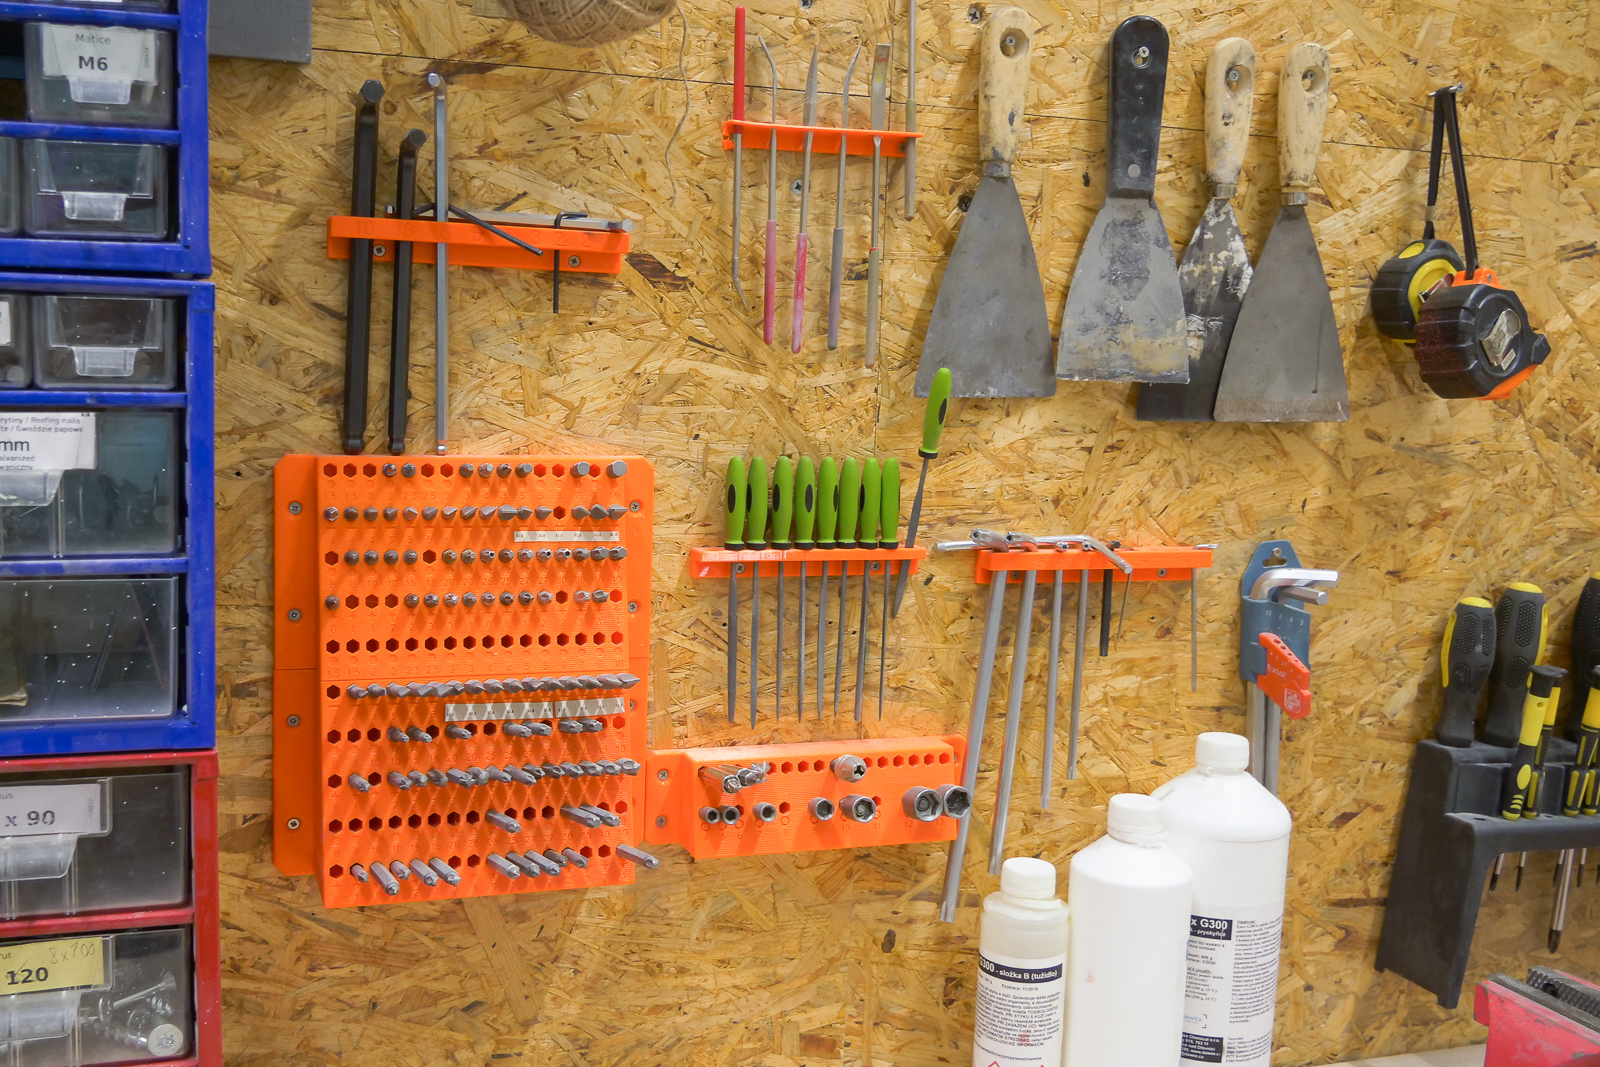 Kit de rangement pour outils de jardin, Rangement pour outils de